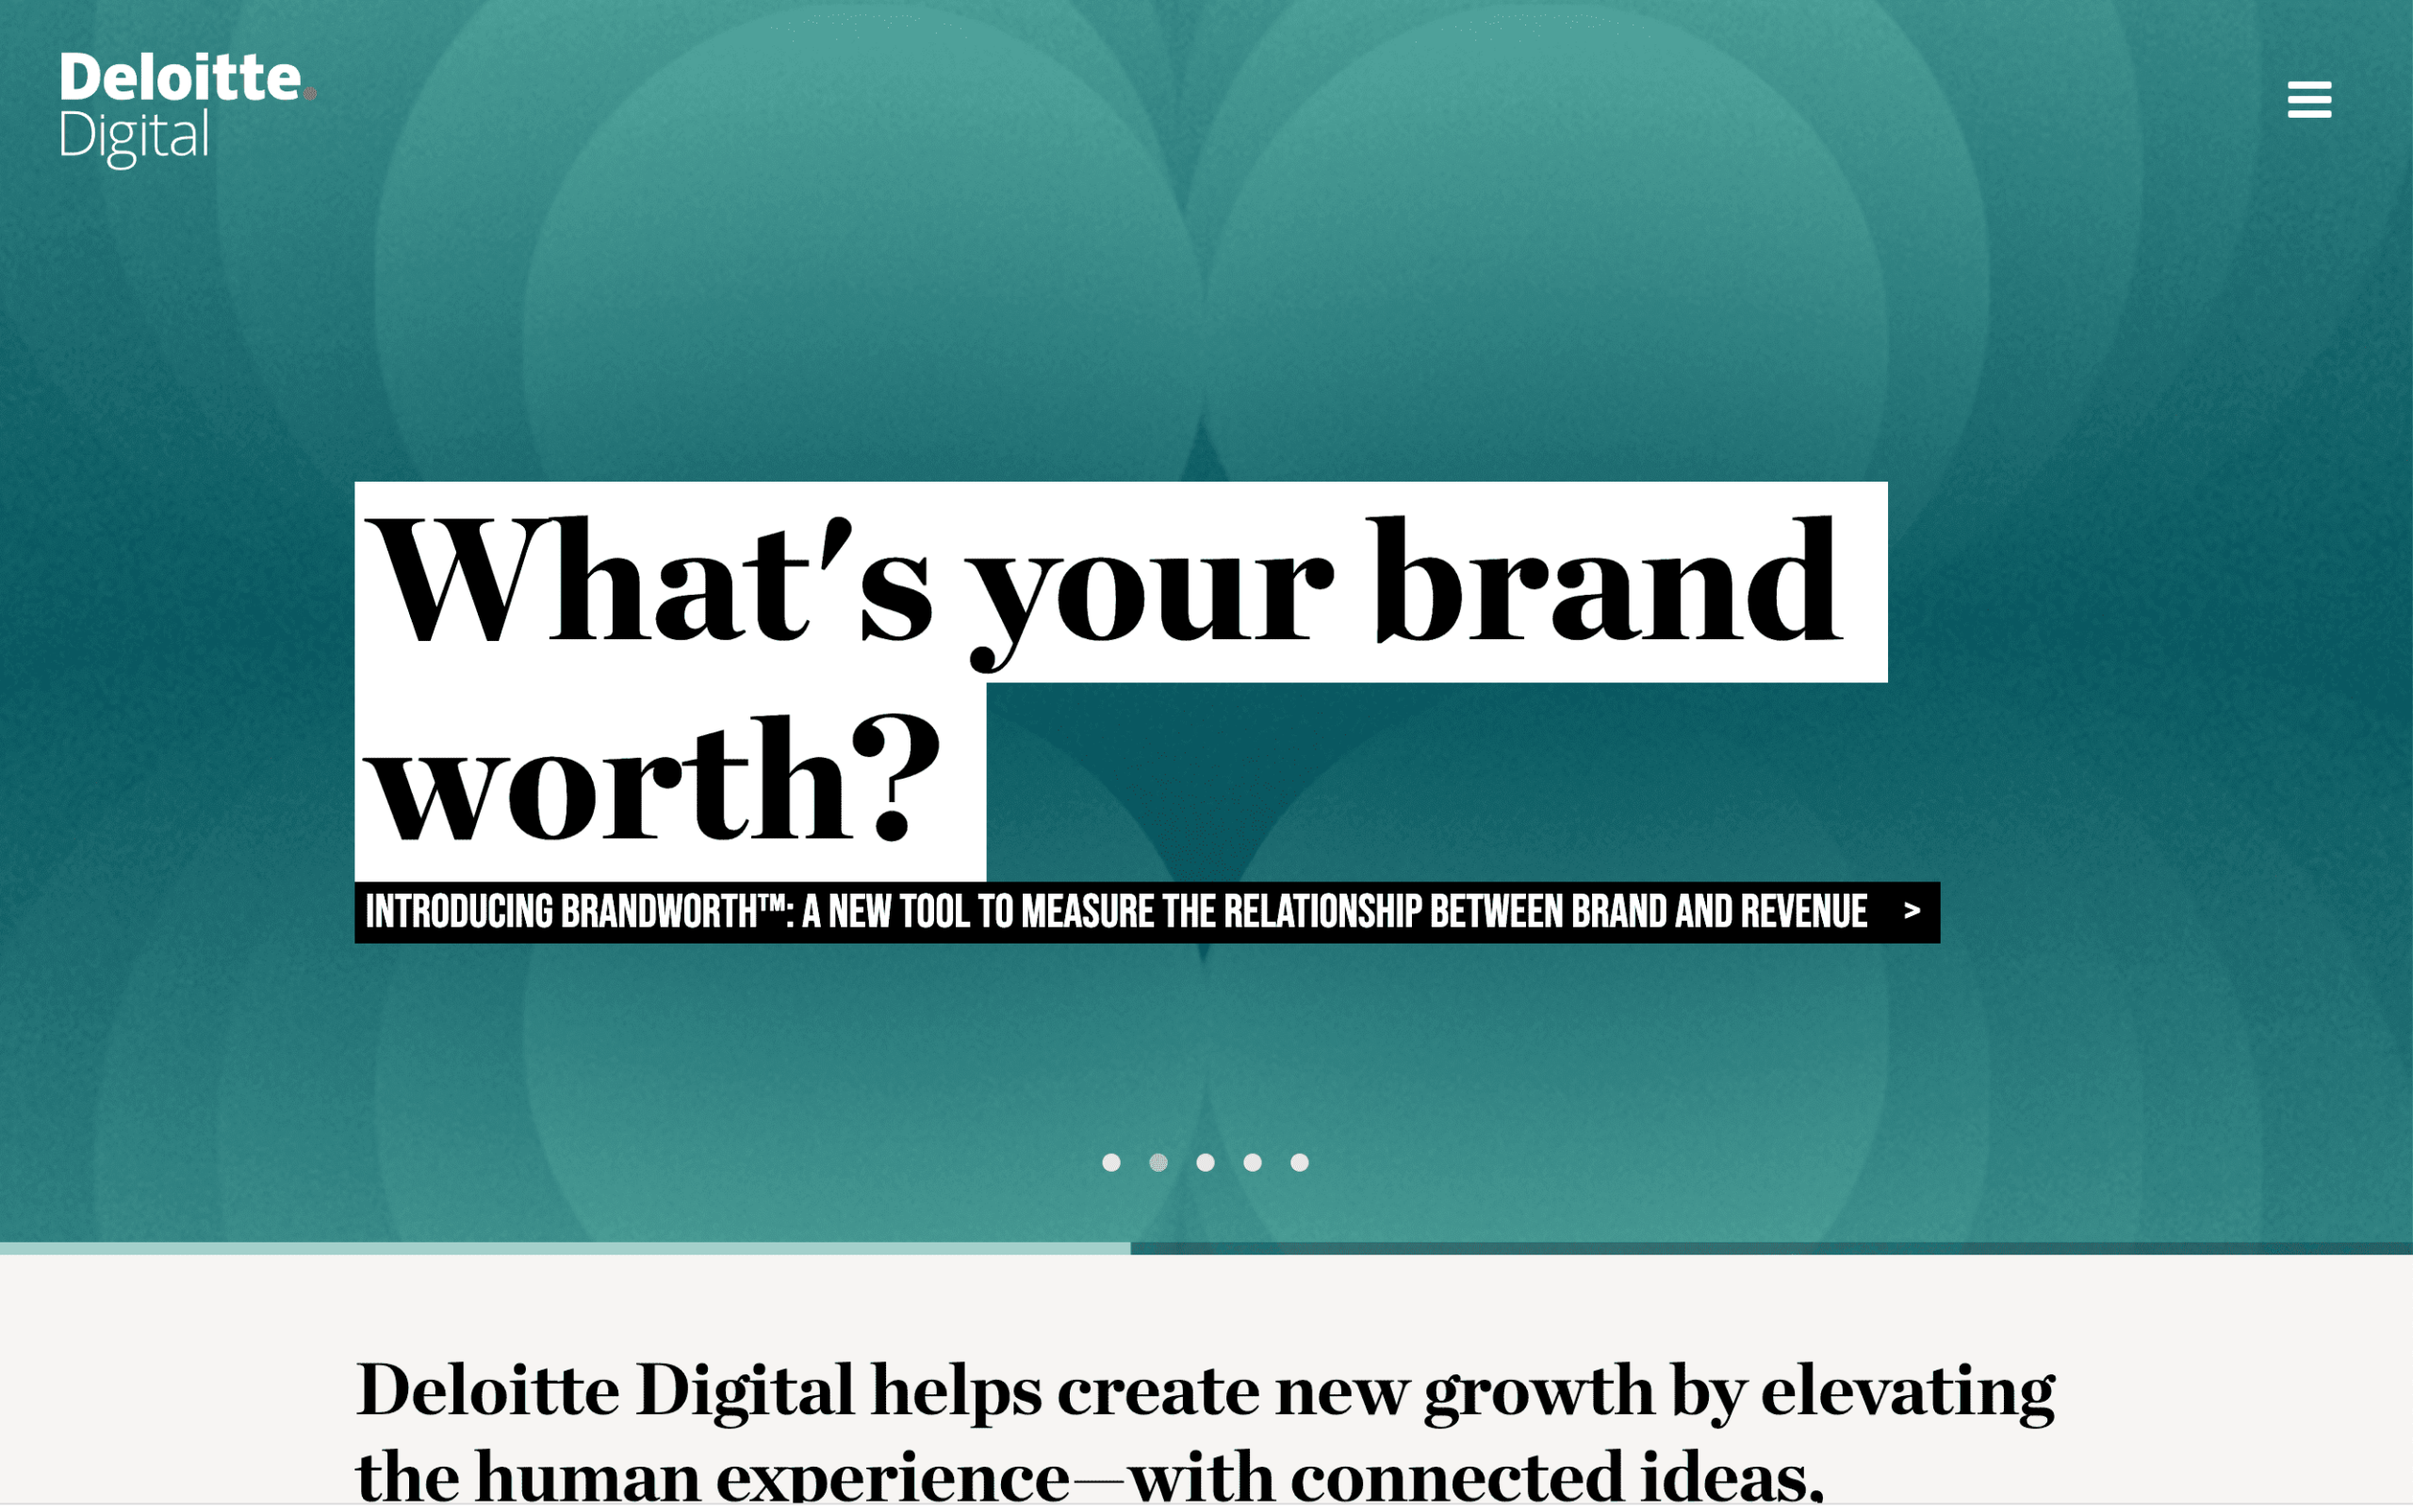 Deloitte Digital web design company